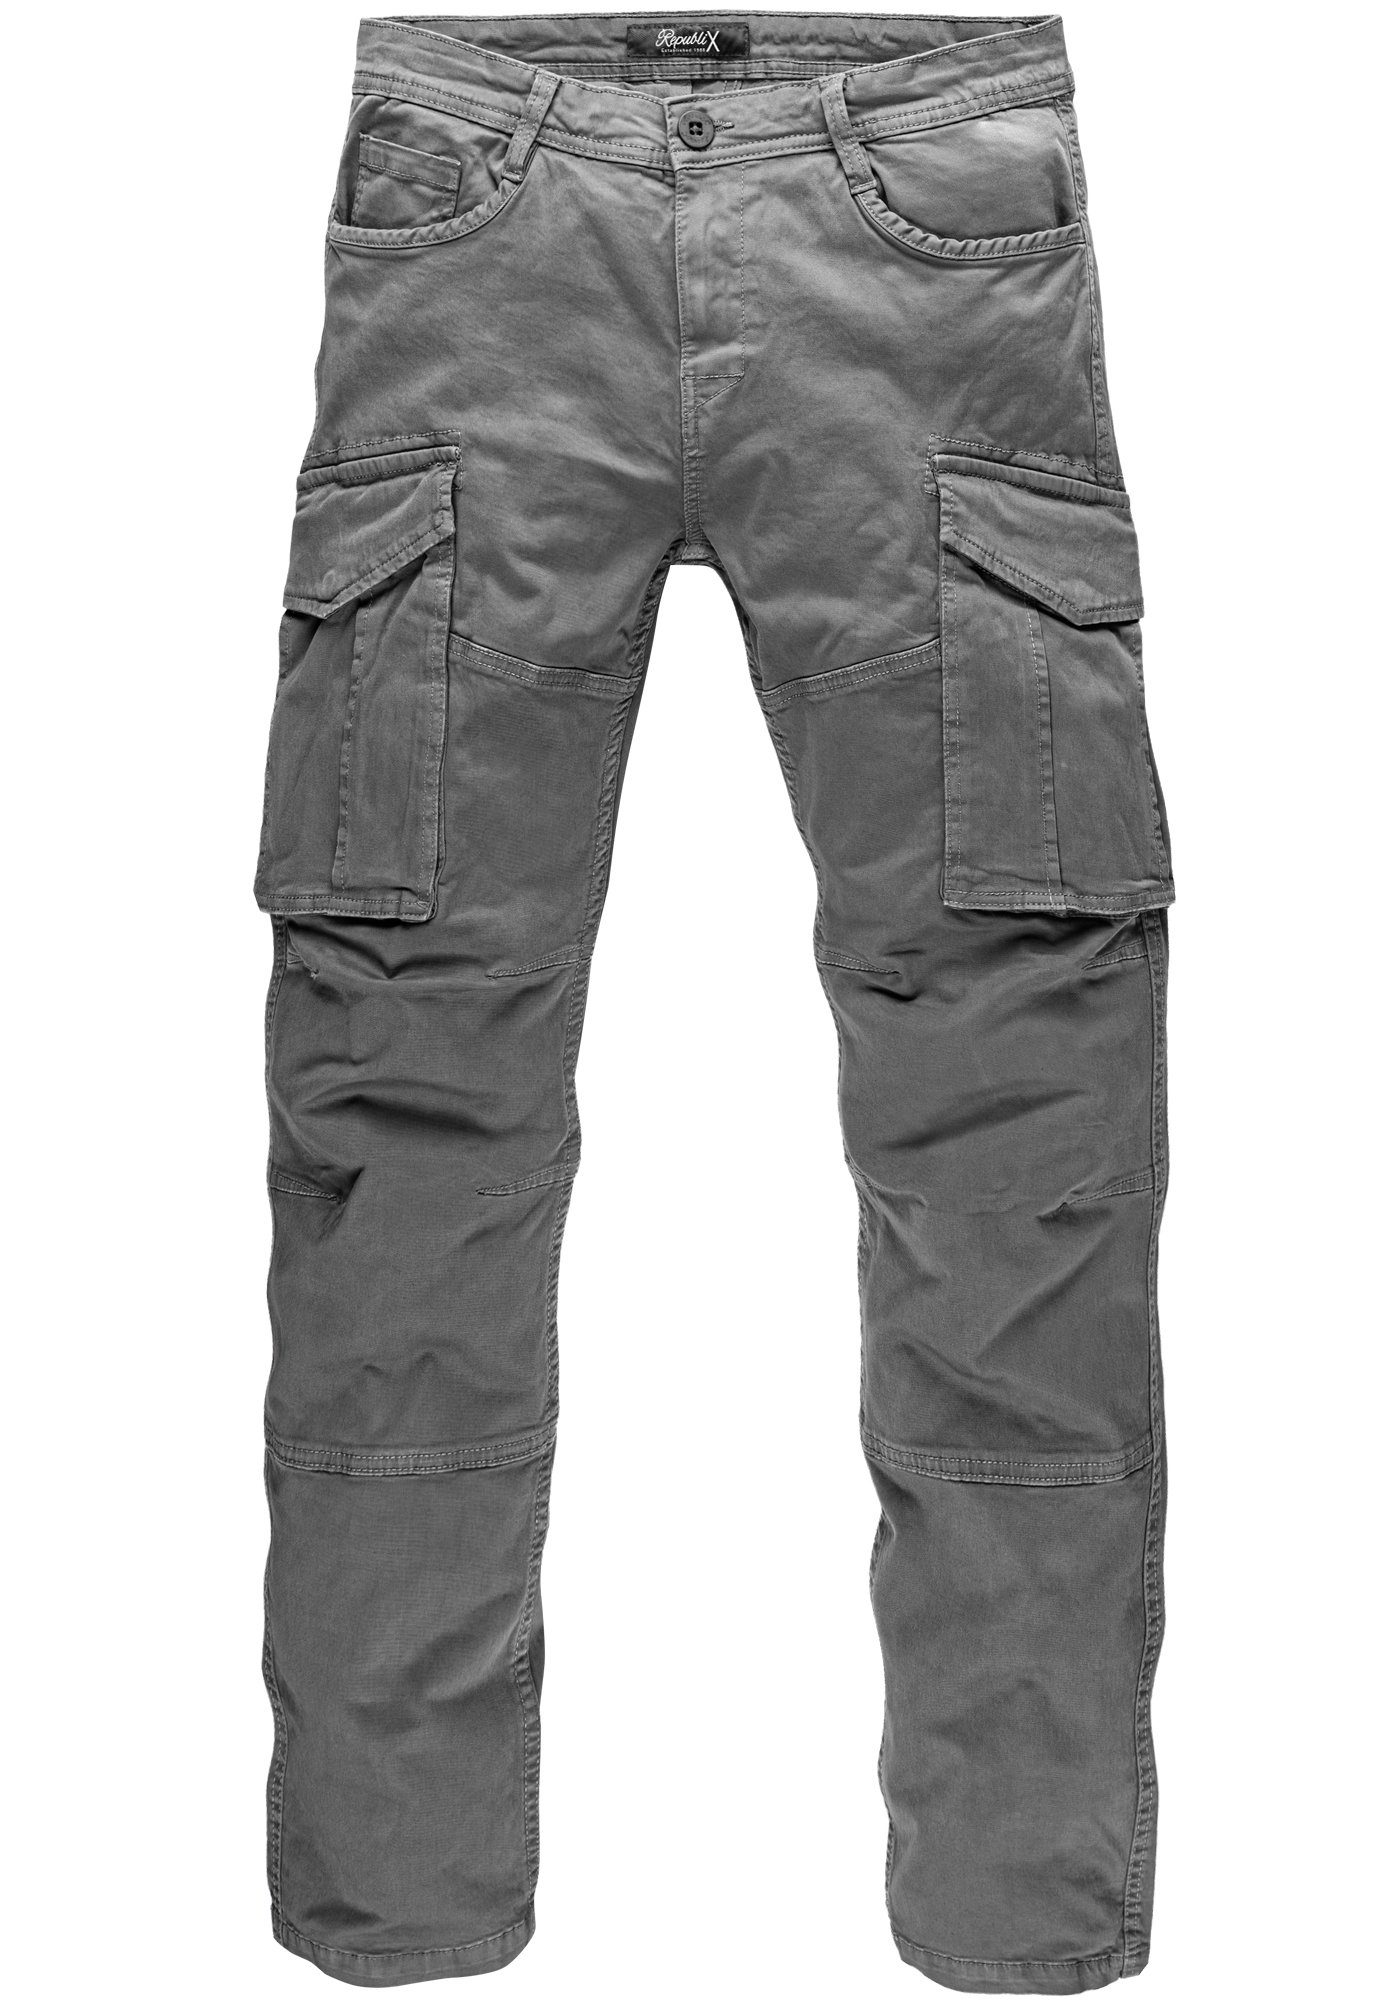 REPUBLIX Cargohose LENNY Herren Cargo Jogger Chino Hose Jeans